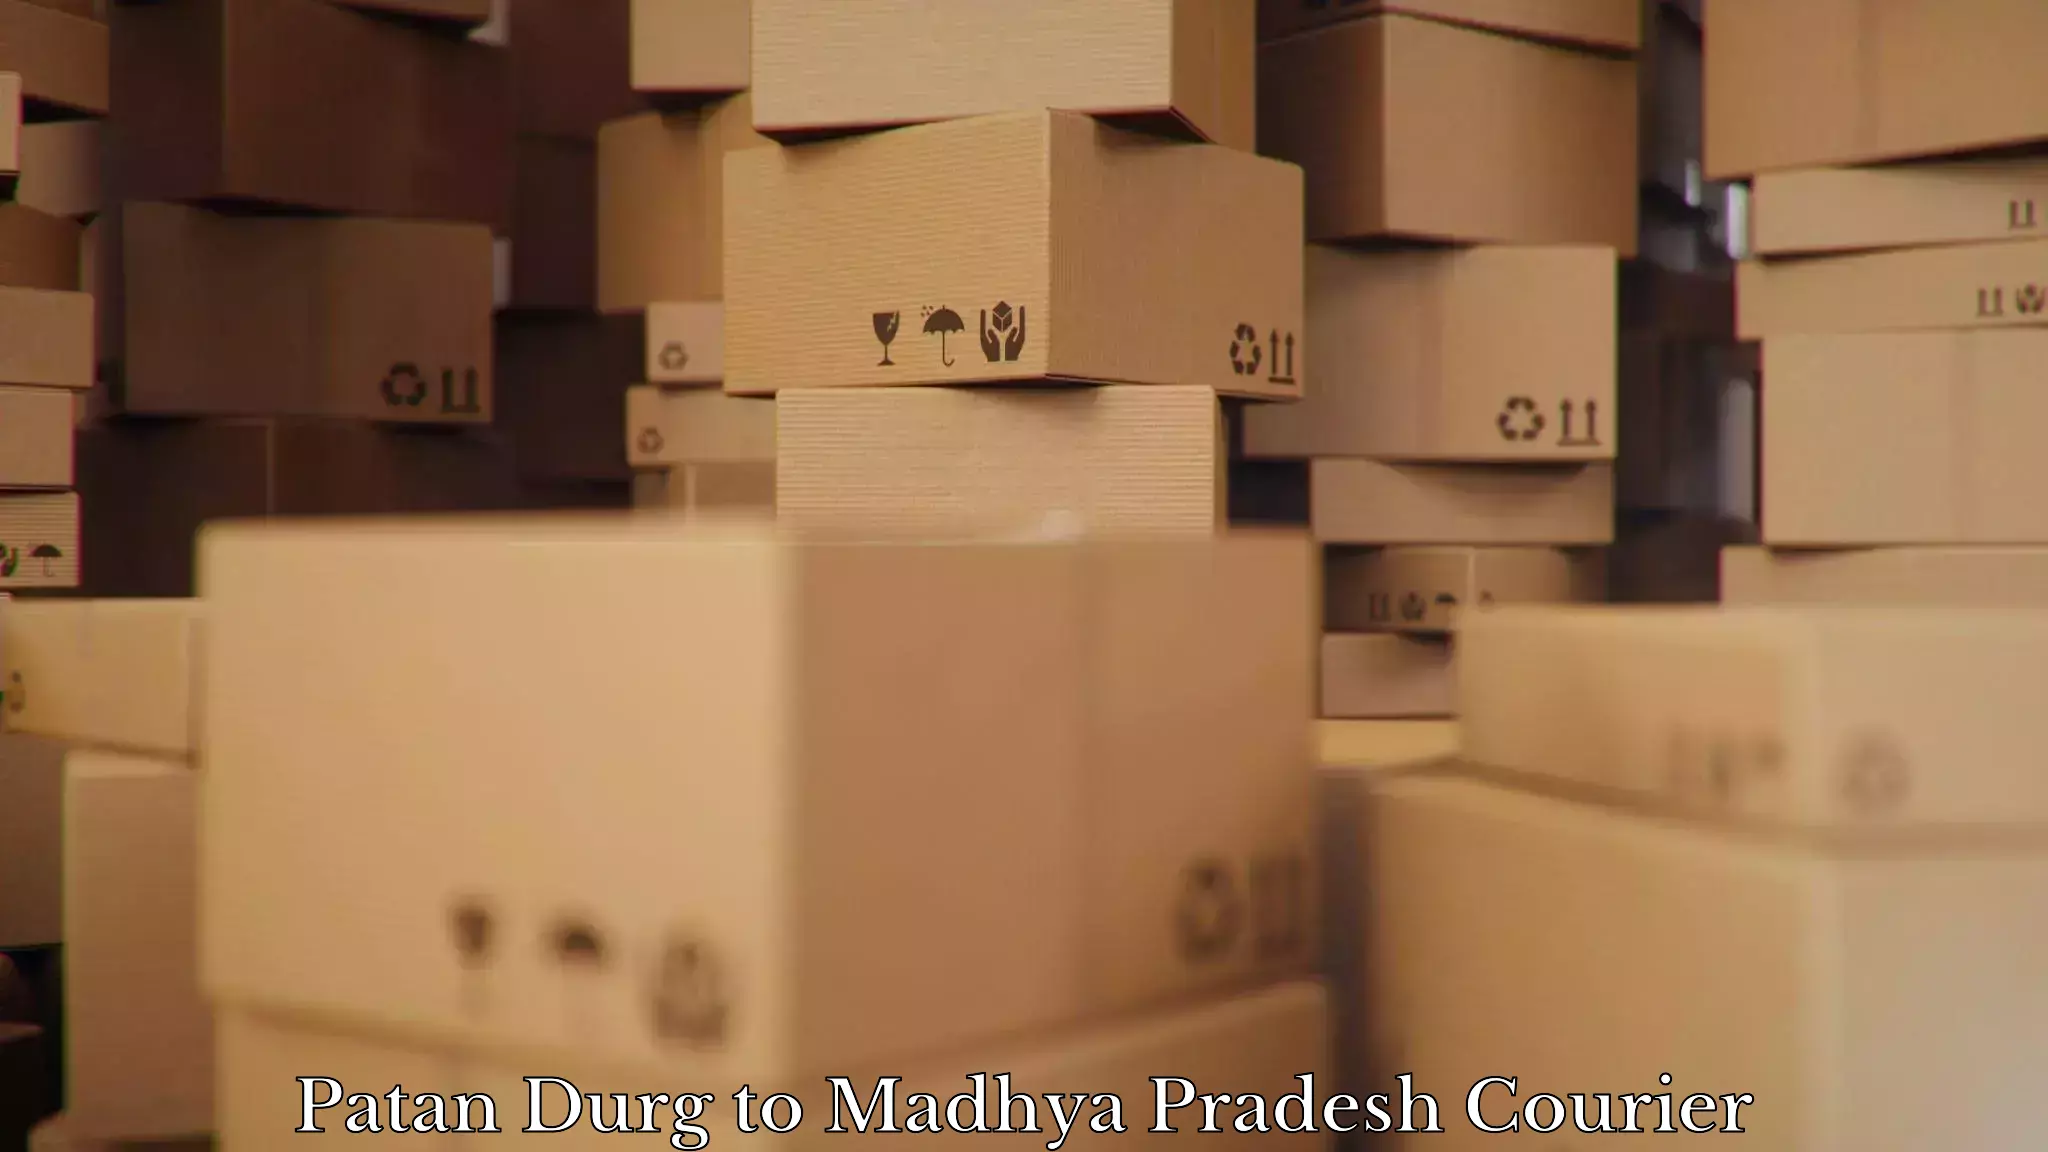 Furniture moving plans Patan Durg to Mundi